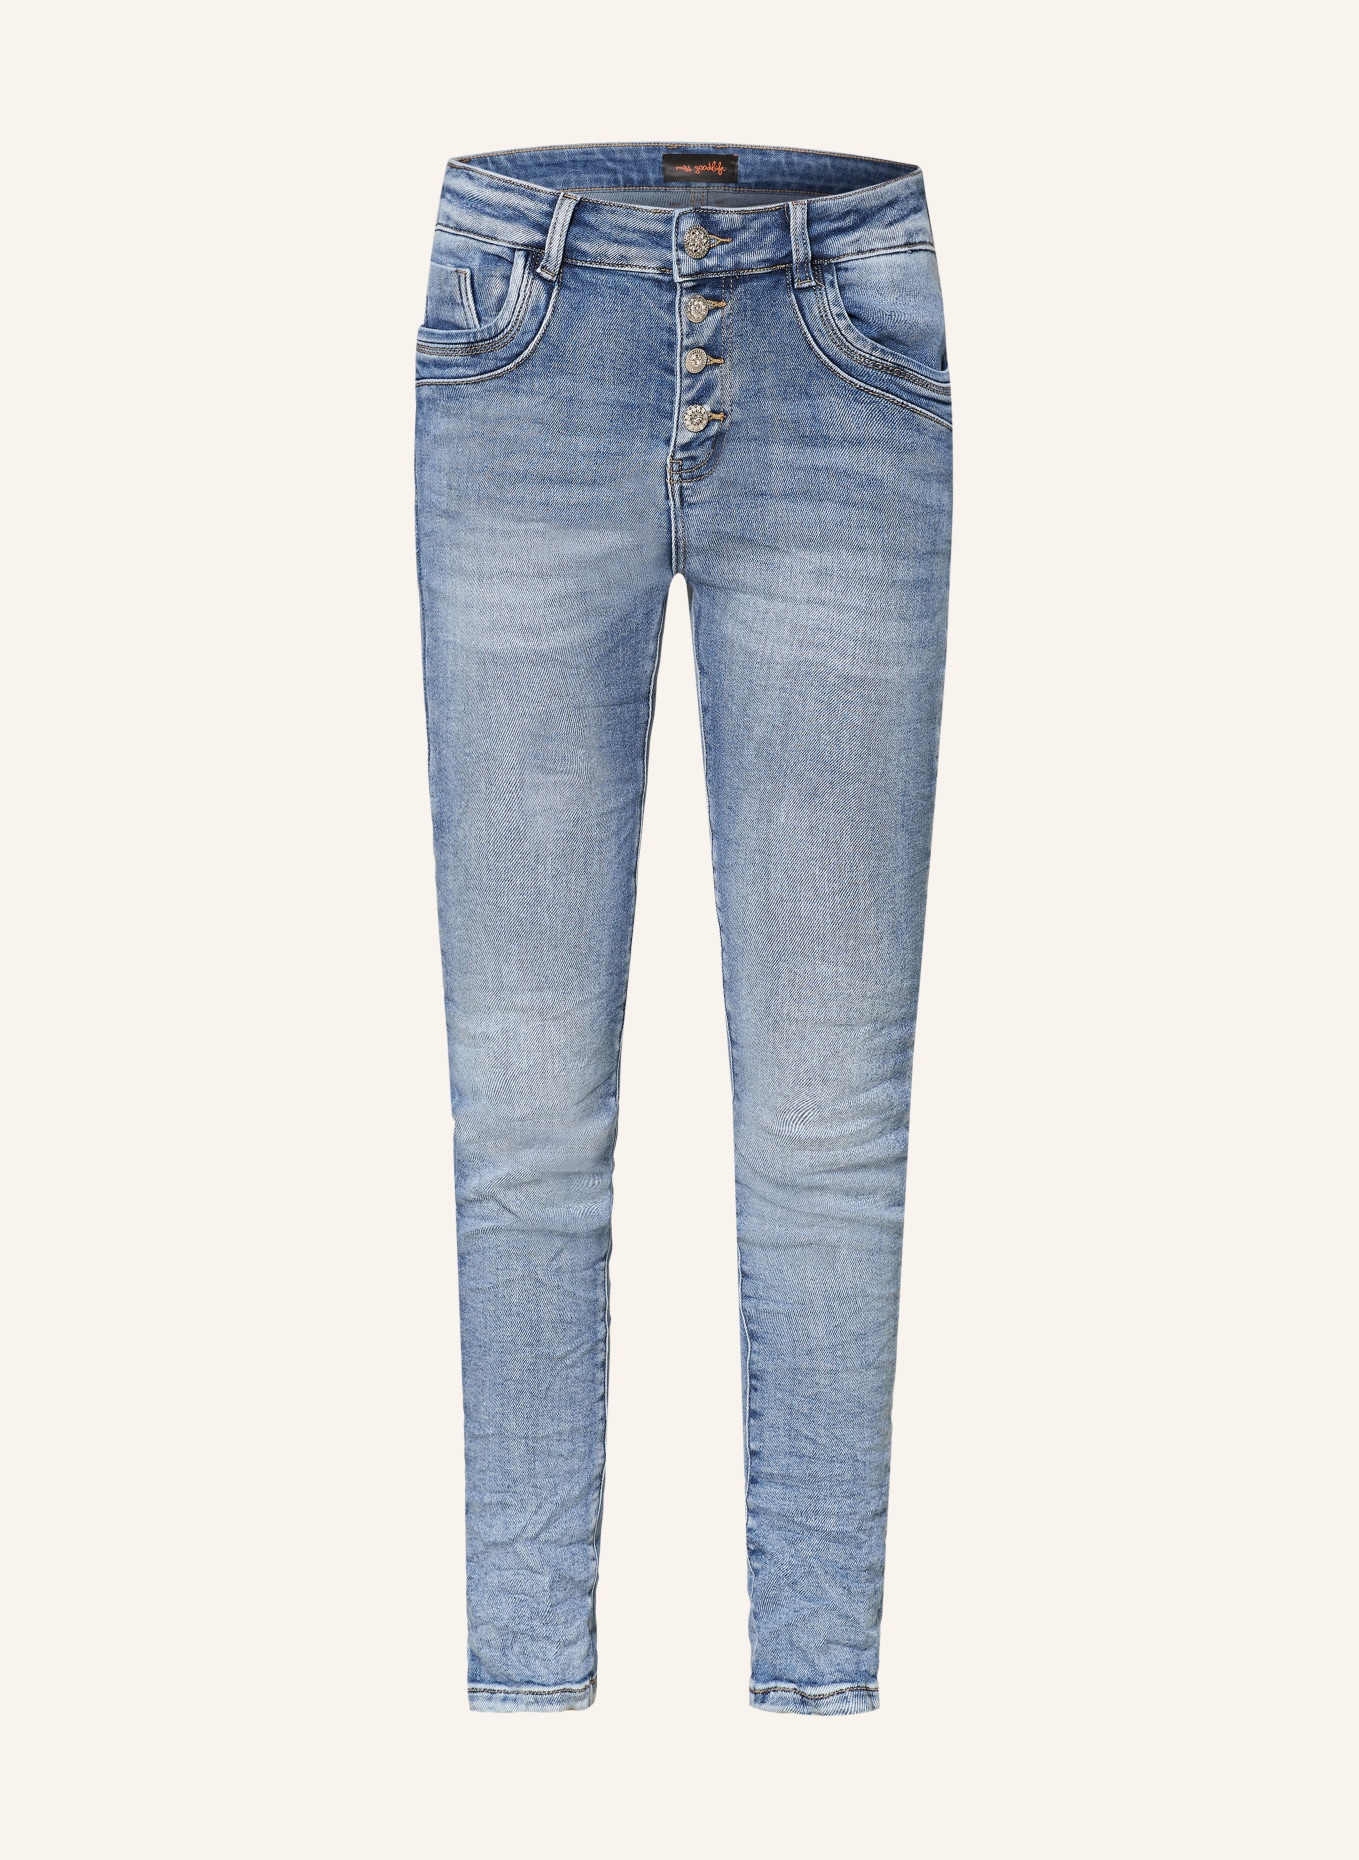 miss goodlife Skinny jeans STAR, Color: LIGHT BLUE (Image 1)